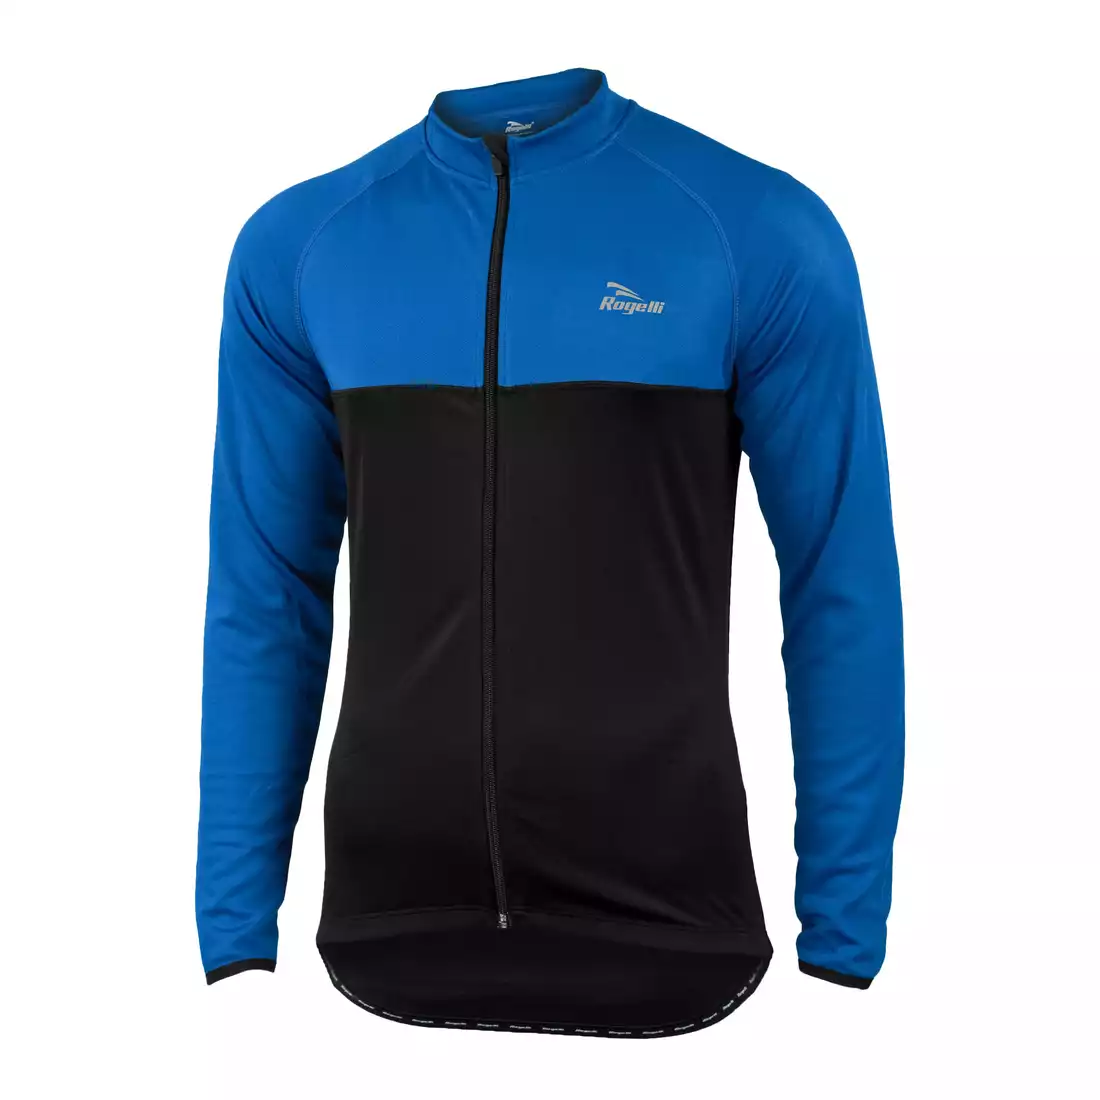 ROGELLI CALUSO - lekko ocieplana bluza rowerowa, kolor: Czarno-niebieski